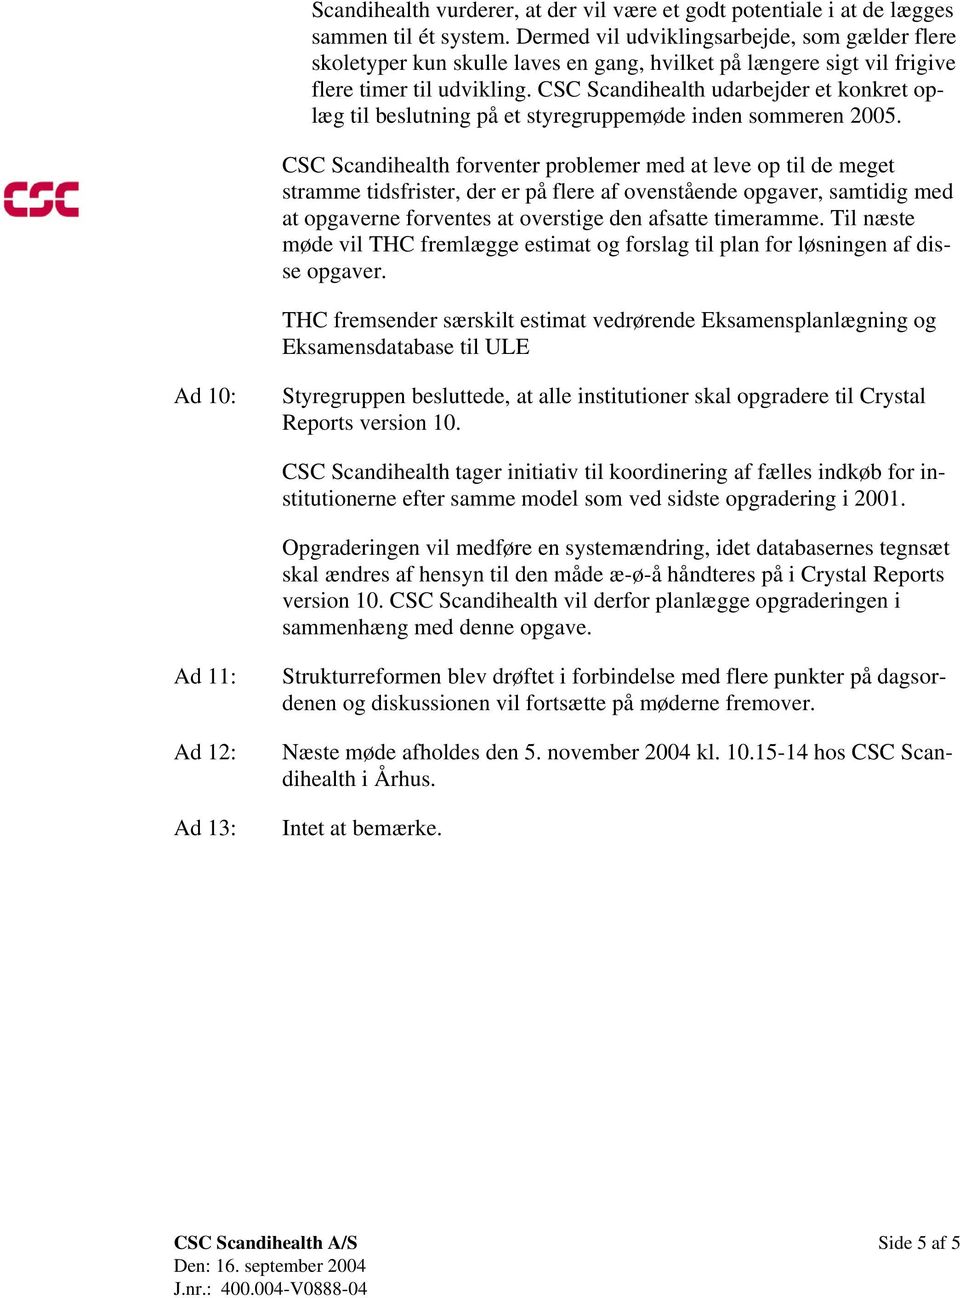 CSC Scandihealth udarbejder et konkret oplæg til beslutning på et styregruppemøde inden sommeren 2005.